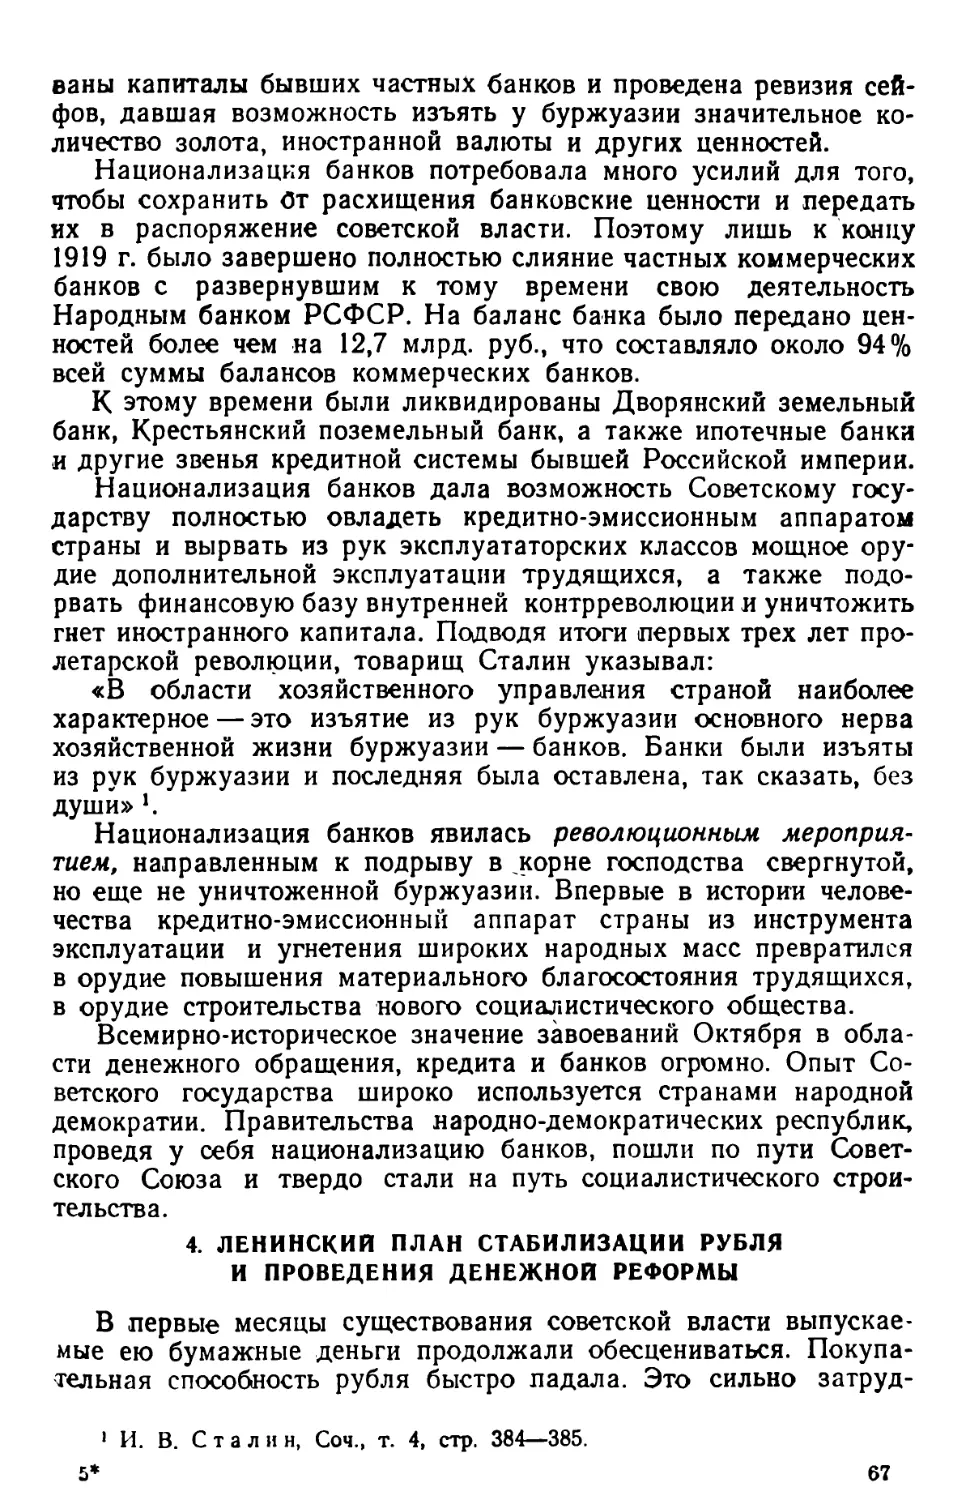 4. Ленинский план стабилизации рубля и проведения денежной реформы